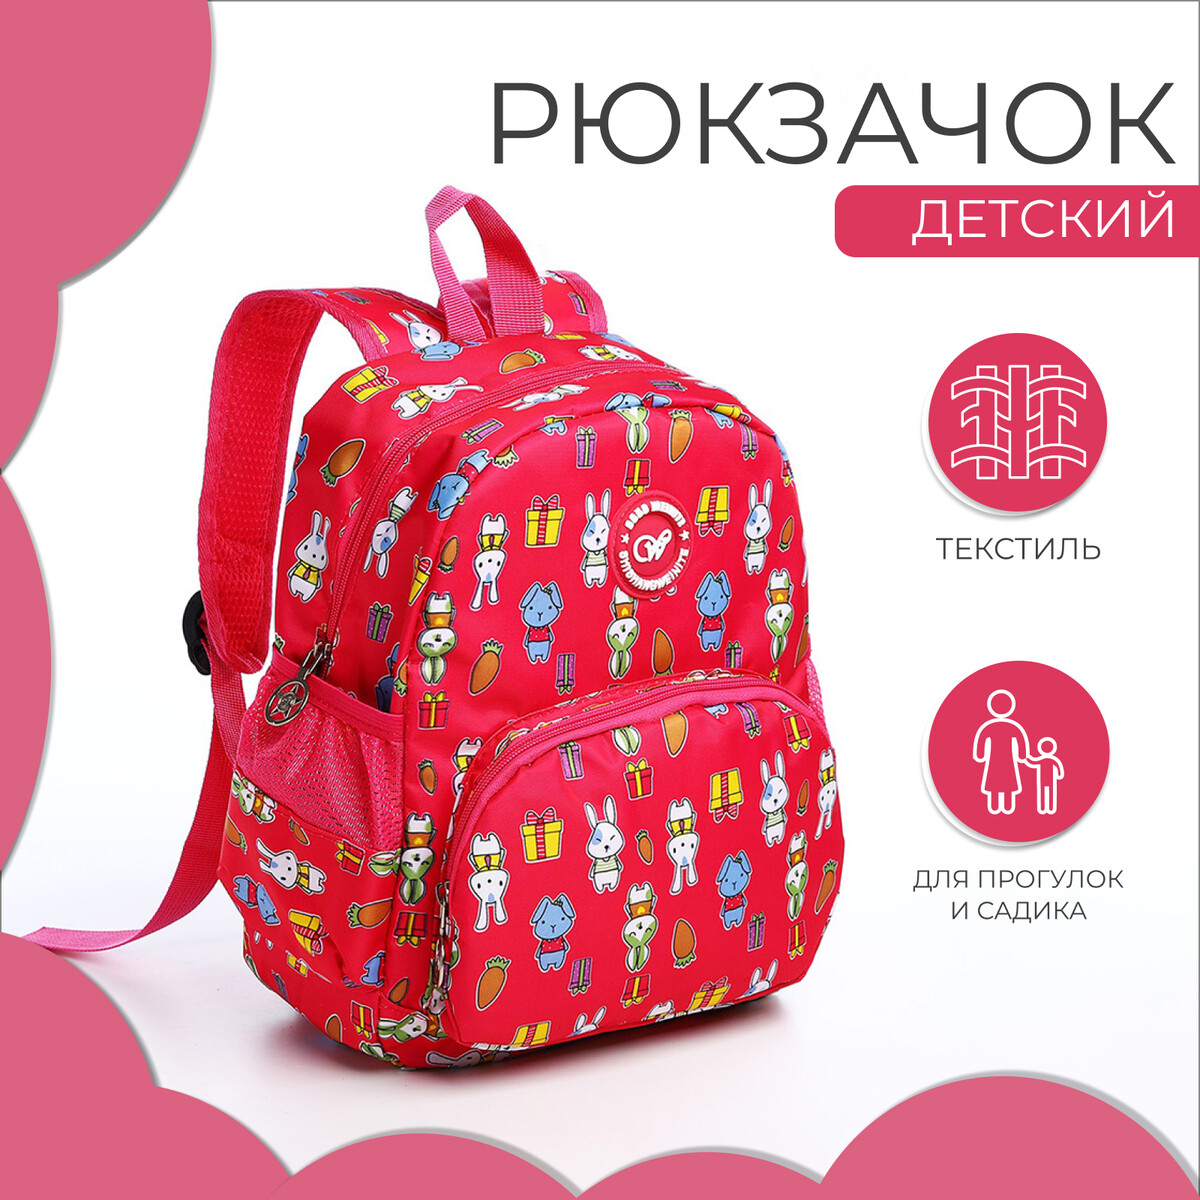 Рюкзак детский на молнии, наружный карман, цвет малиновый рюкзак дет единорог 15718 отд на молнии н карман малиновый